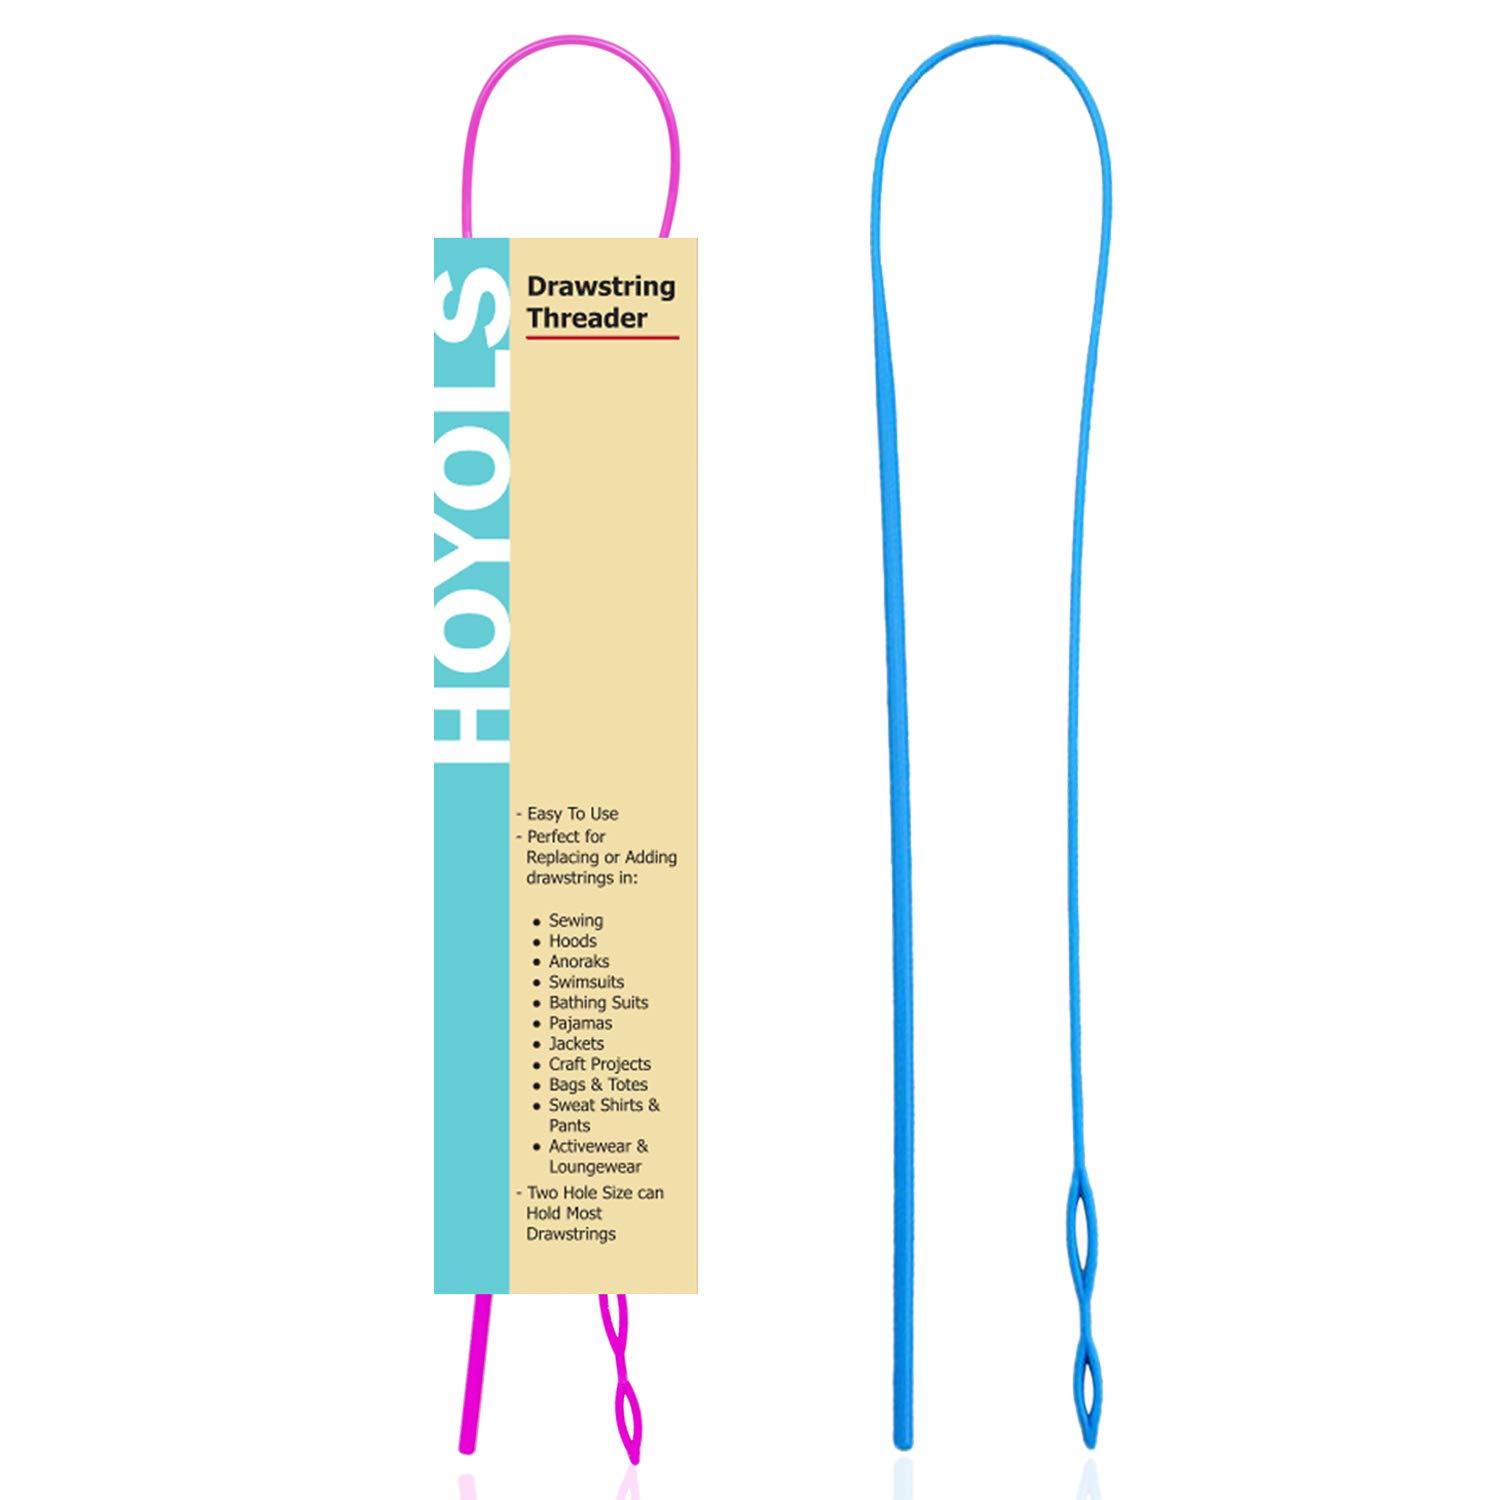 Drawstring Threader, Plastic Flexible Nylon Needle Drawstring